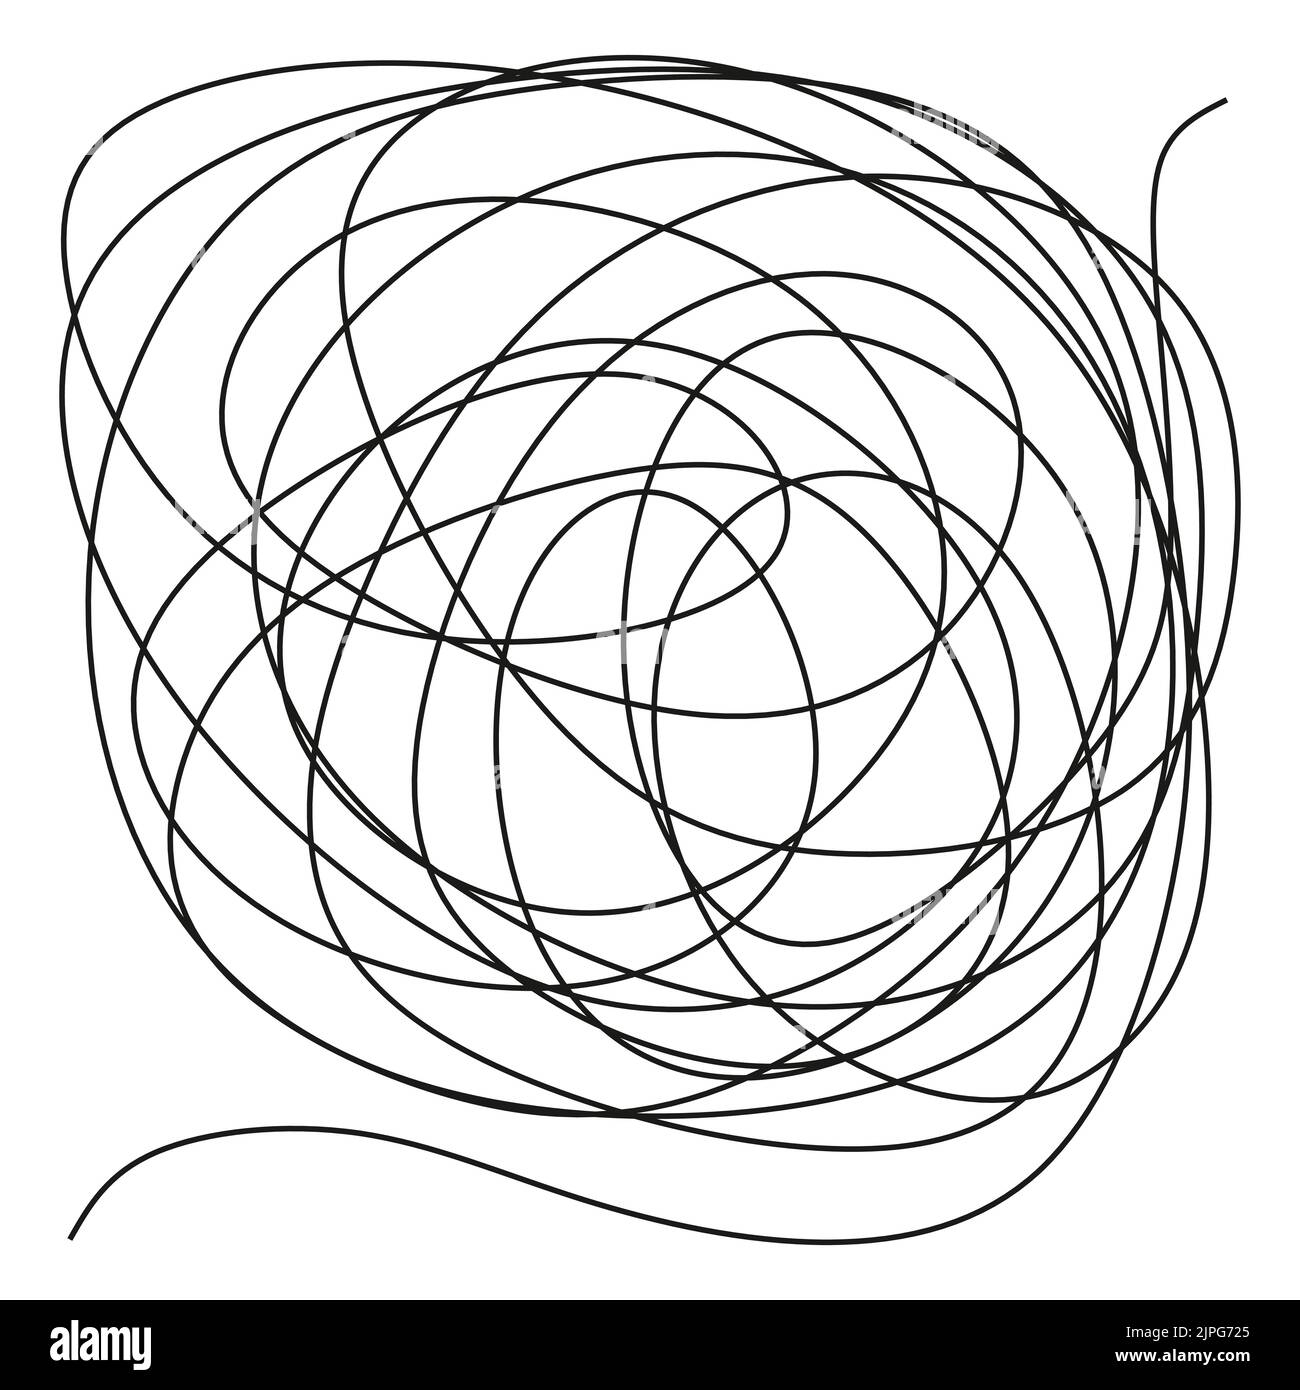 Mano disegnata scarabeo scarabeo caos percorso linee sudicio Illustrazione Vettoriale